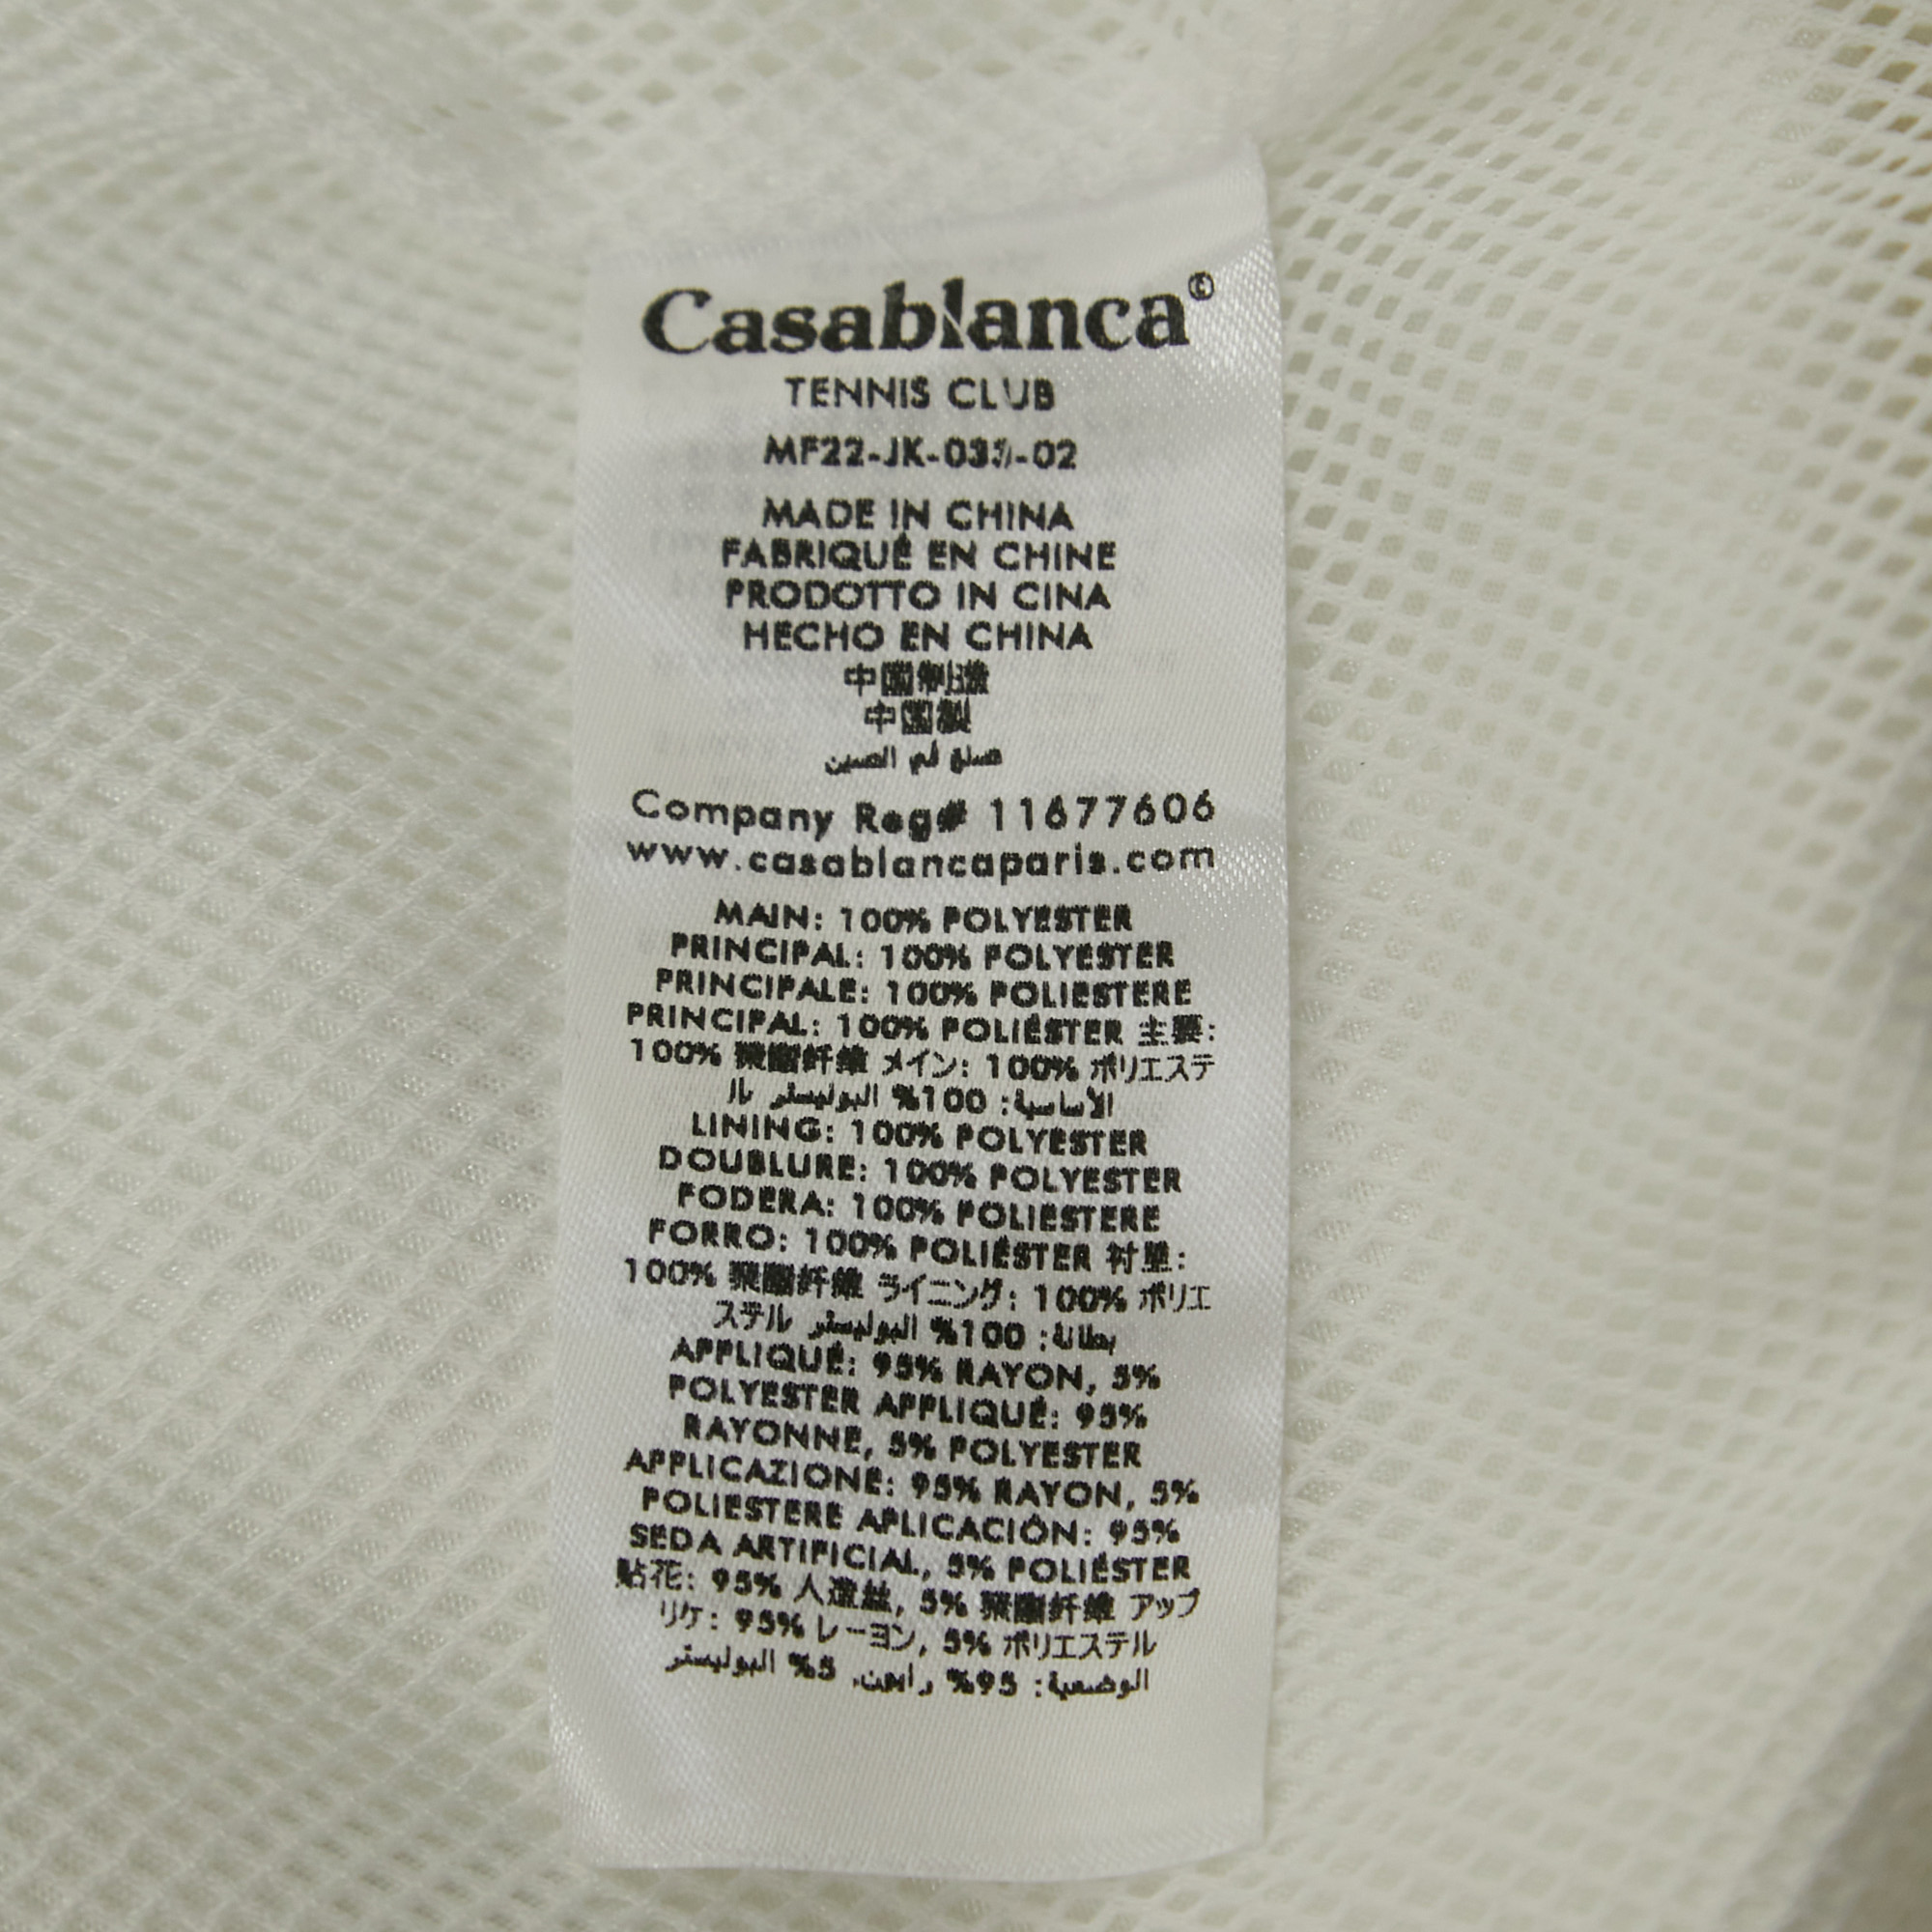 Casablanca White Par Avion Print Synthetic Shell Suit Track Jacket L